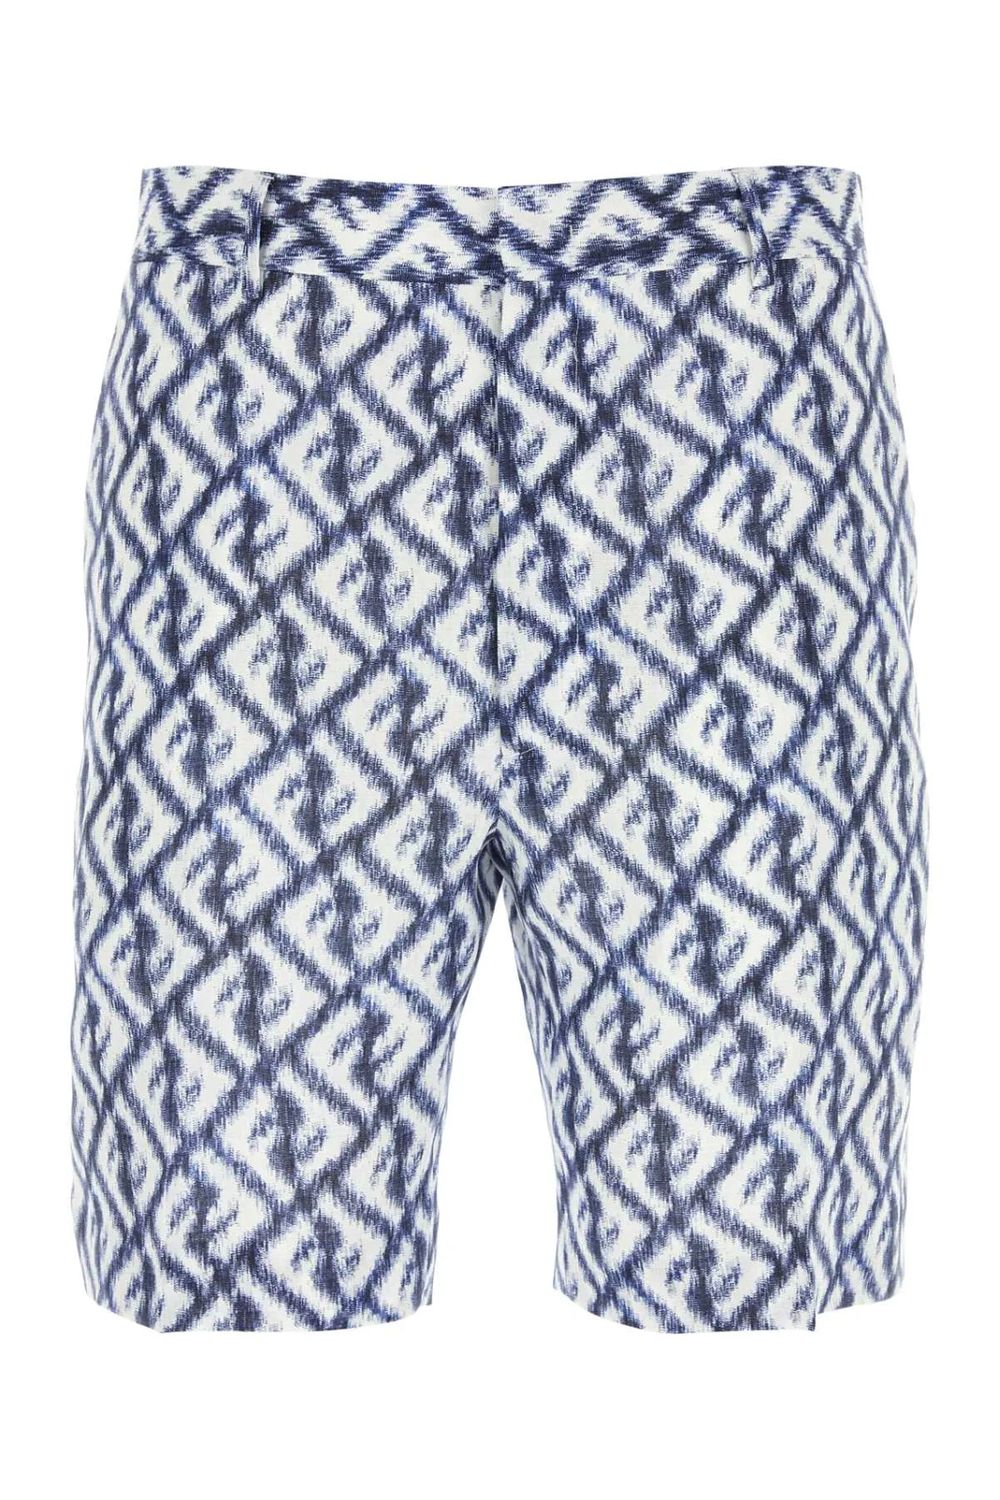 FENDI Navy Linen Shorts for Men - Perfect for Spring/Summer